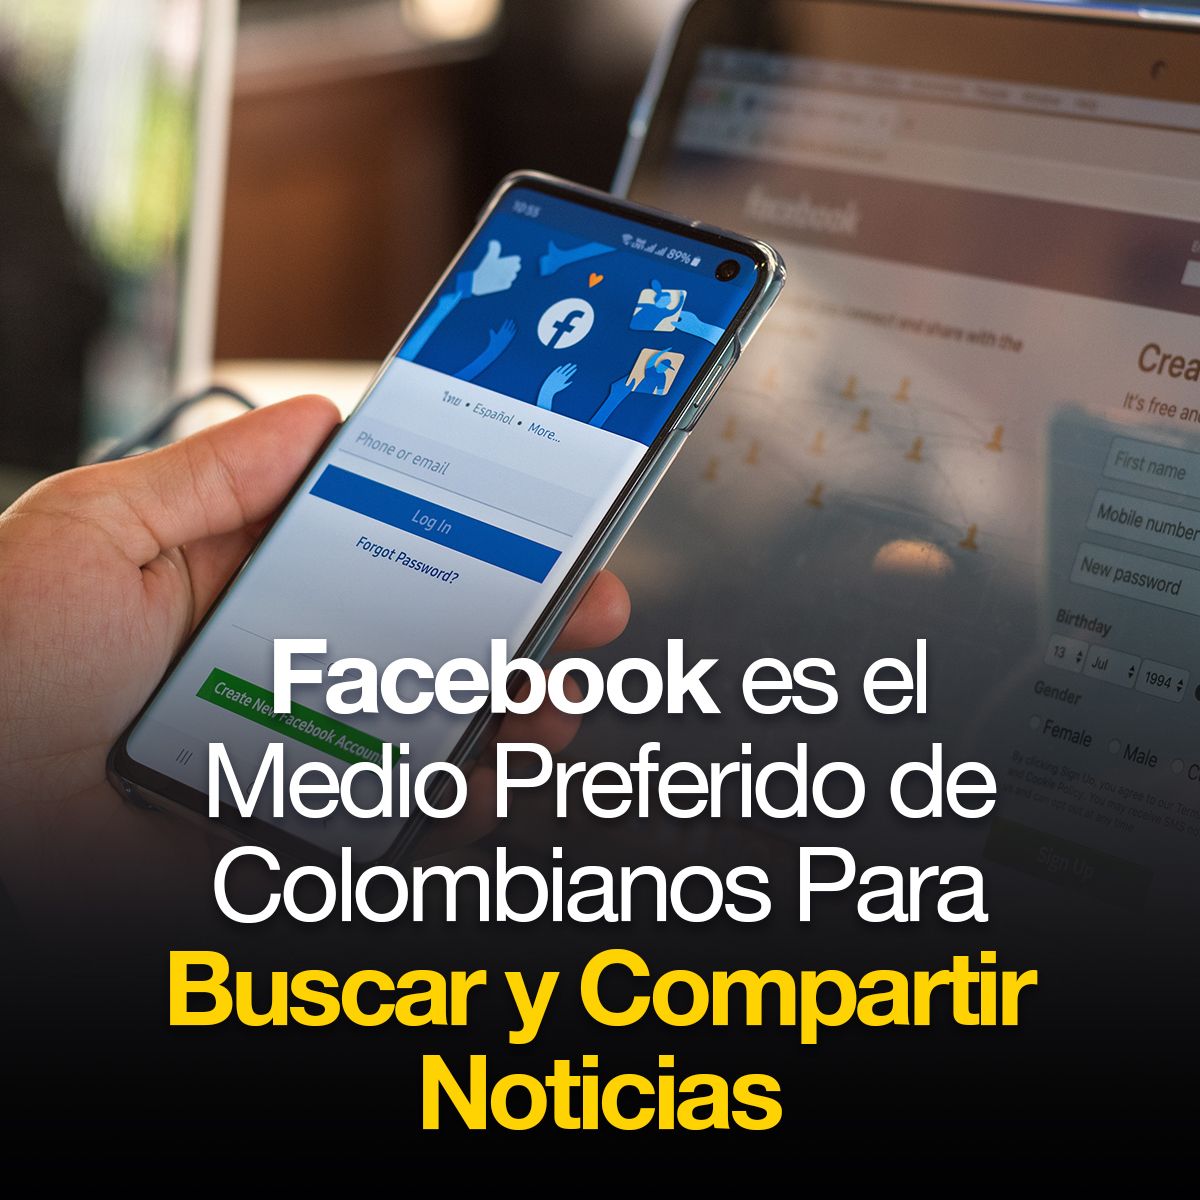 Facebook es el Medio Preferido de Colombianos Para Buscar y Compartir Noticias